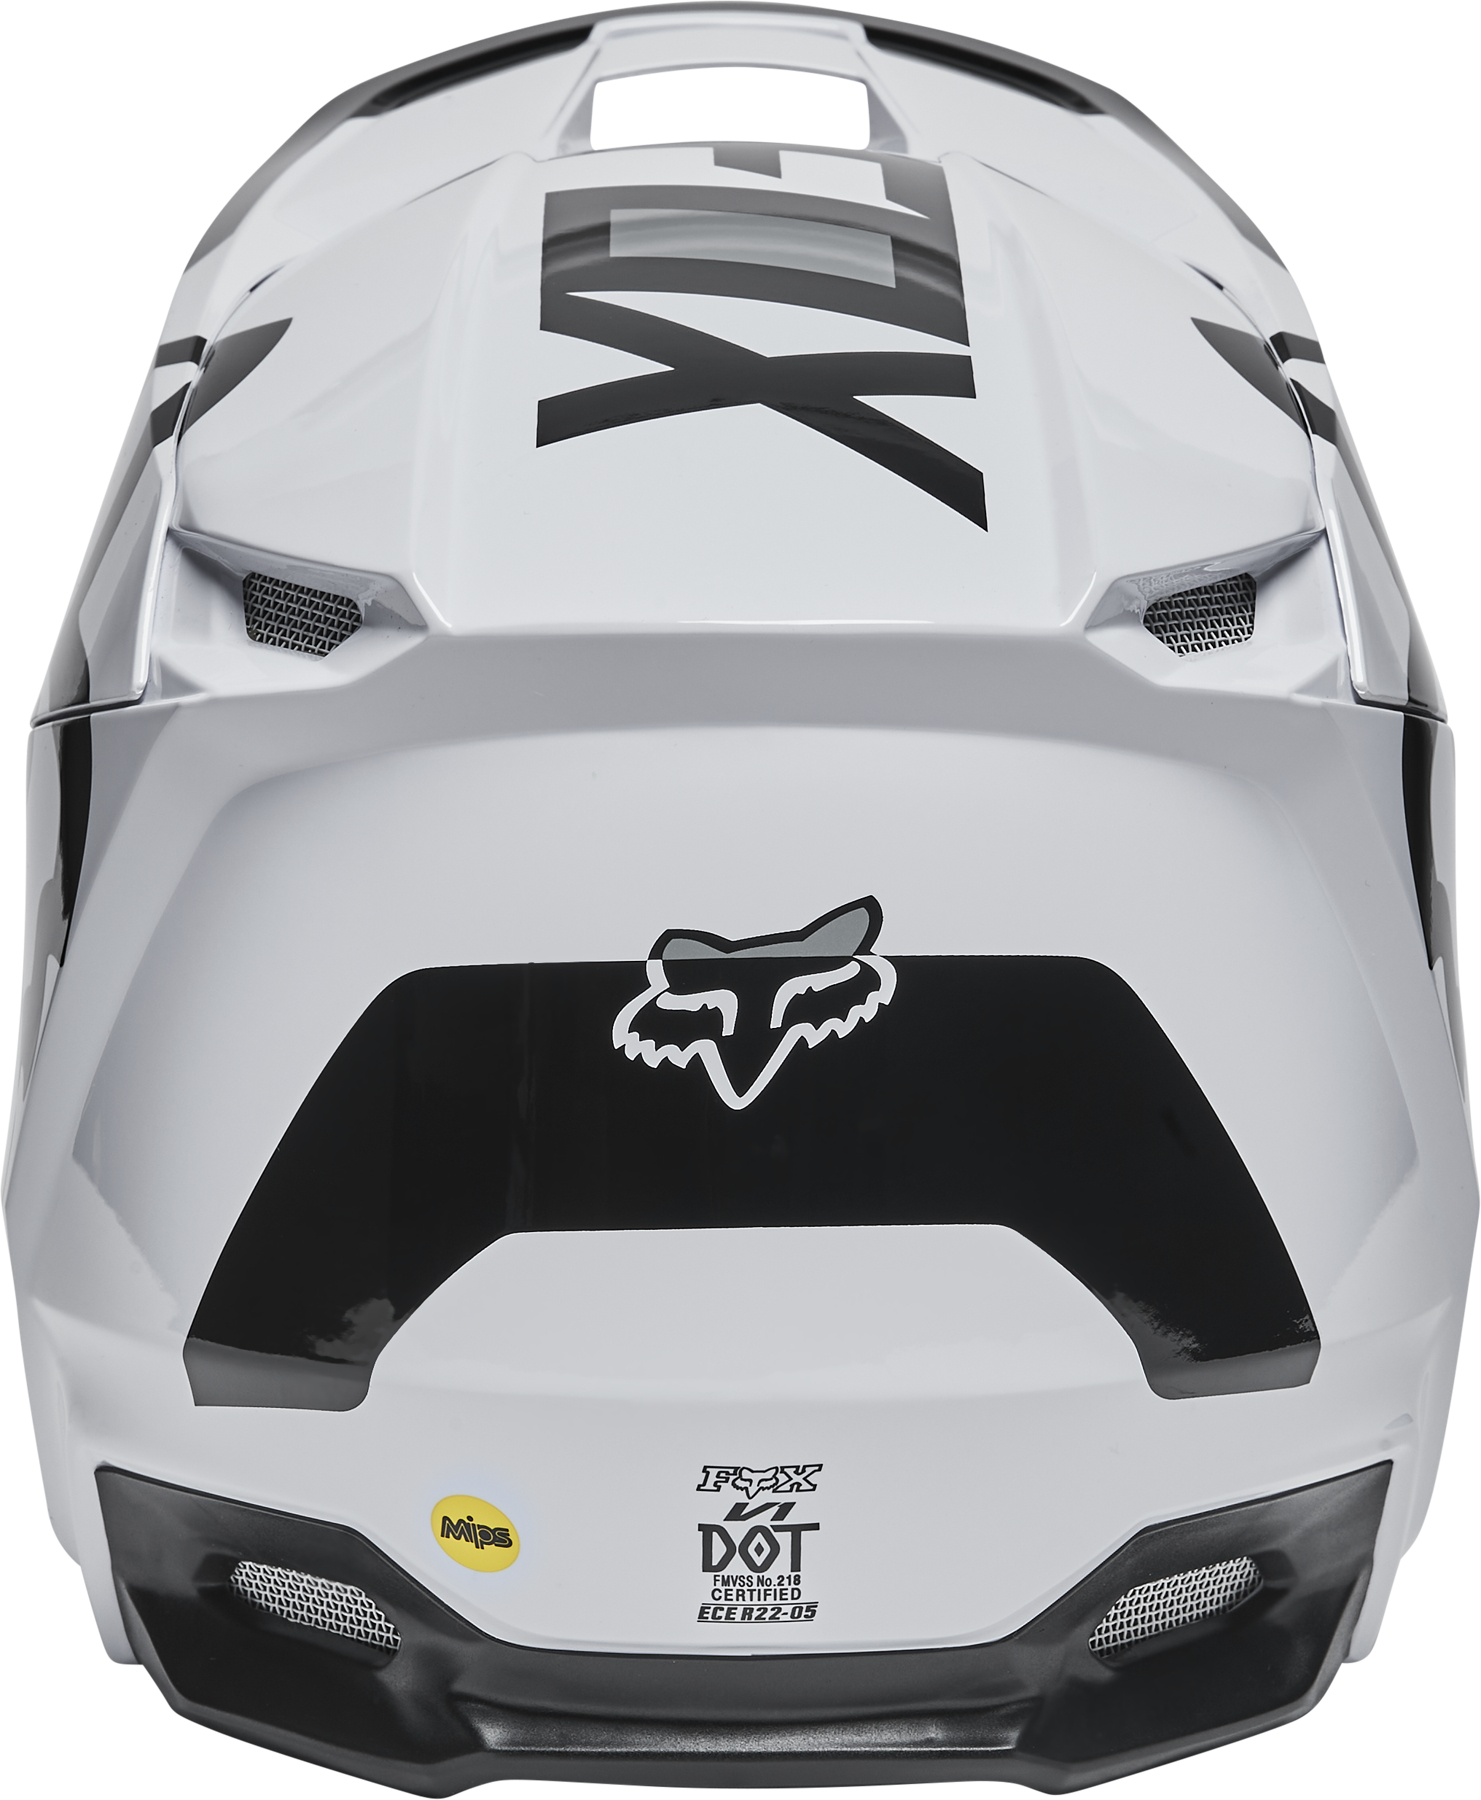 Casco Motocross FOX - V1 LUX #28001-002 - Fox Racing Argentina